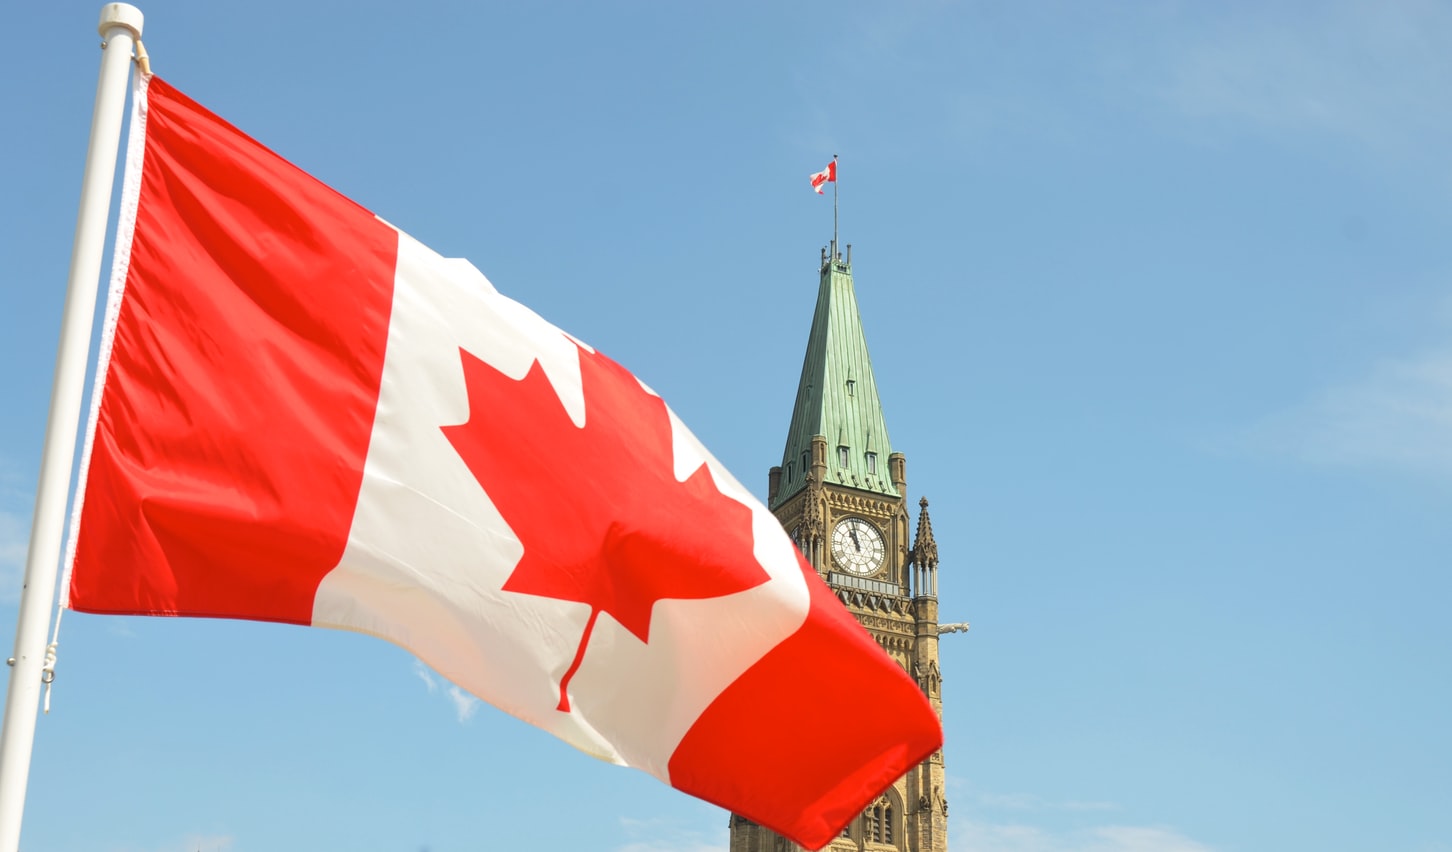 bandera canadiense ondeando